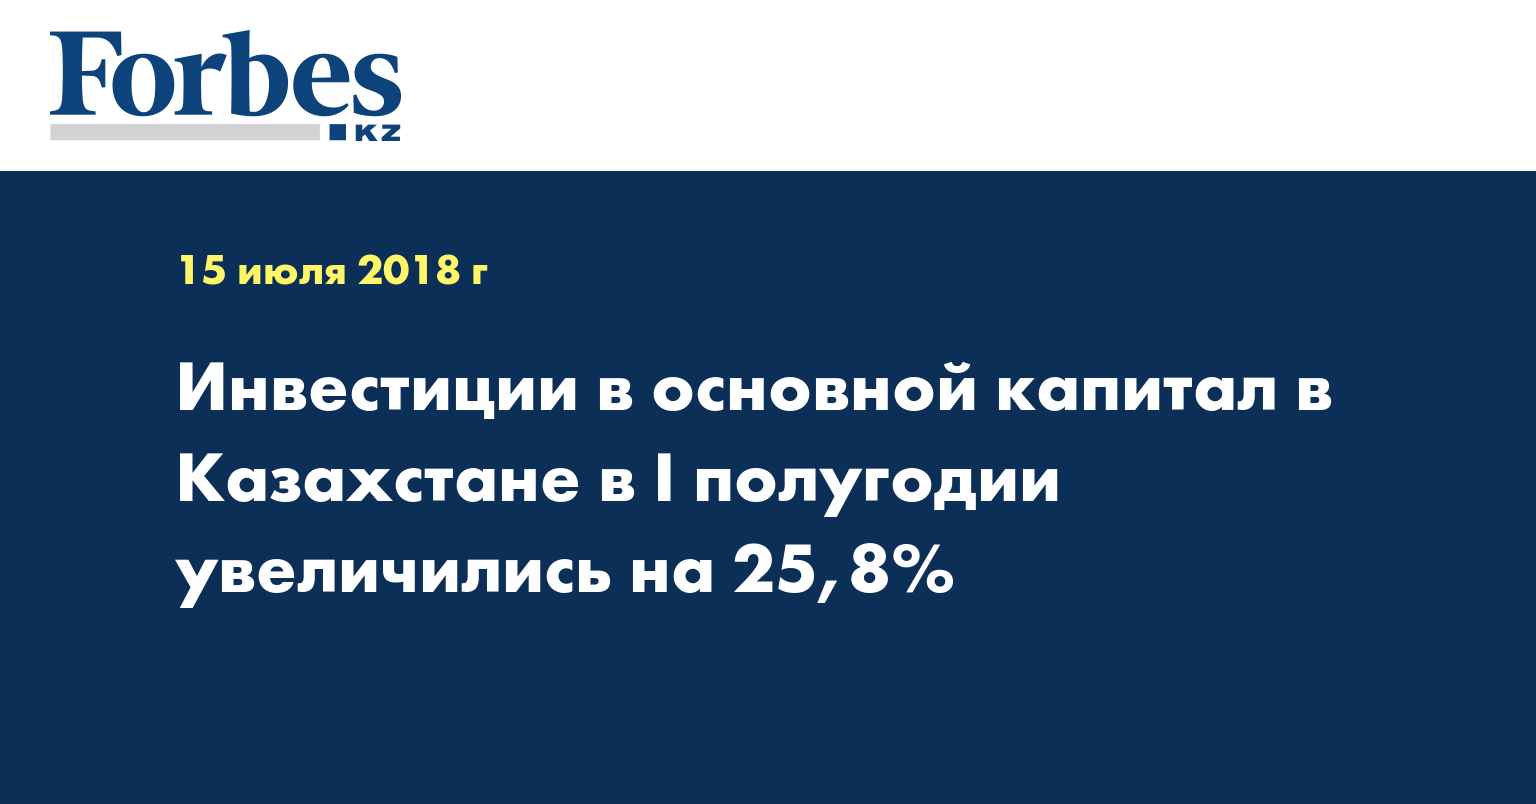 Инвестиции в основной капитал в Казахстане в I полугодии увеличились на 25,8%